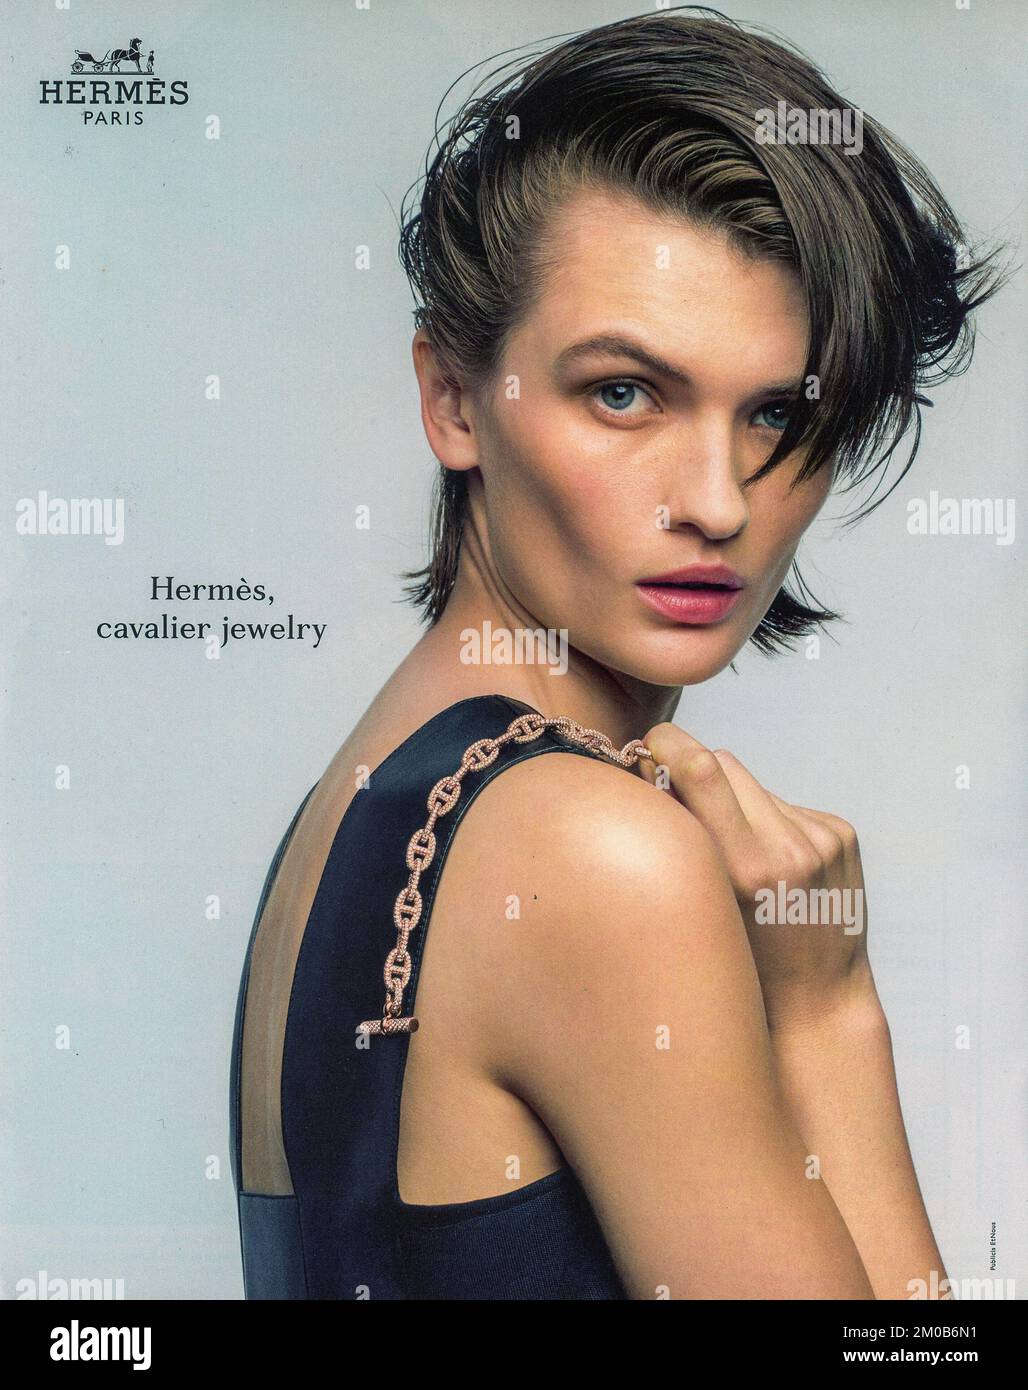 Town & Country ist ein exklusives Modemagazin mit Hermes Paris-Werbespot, 2022 Stockfoto